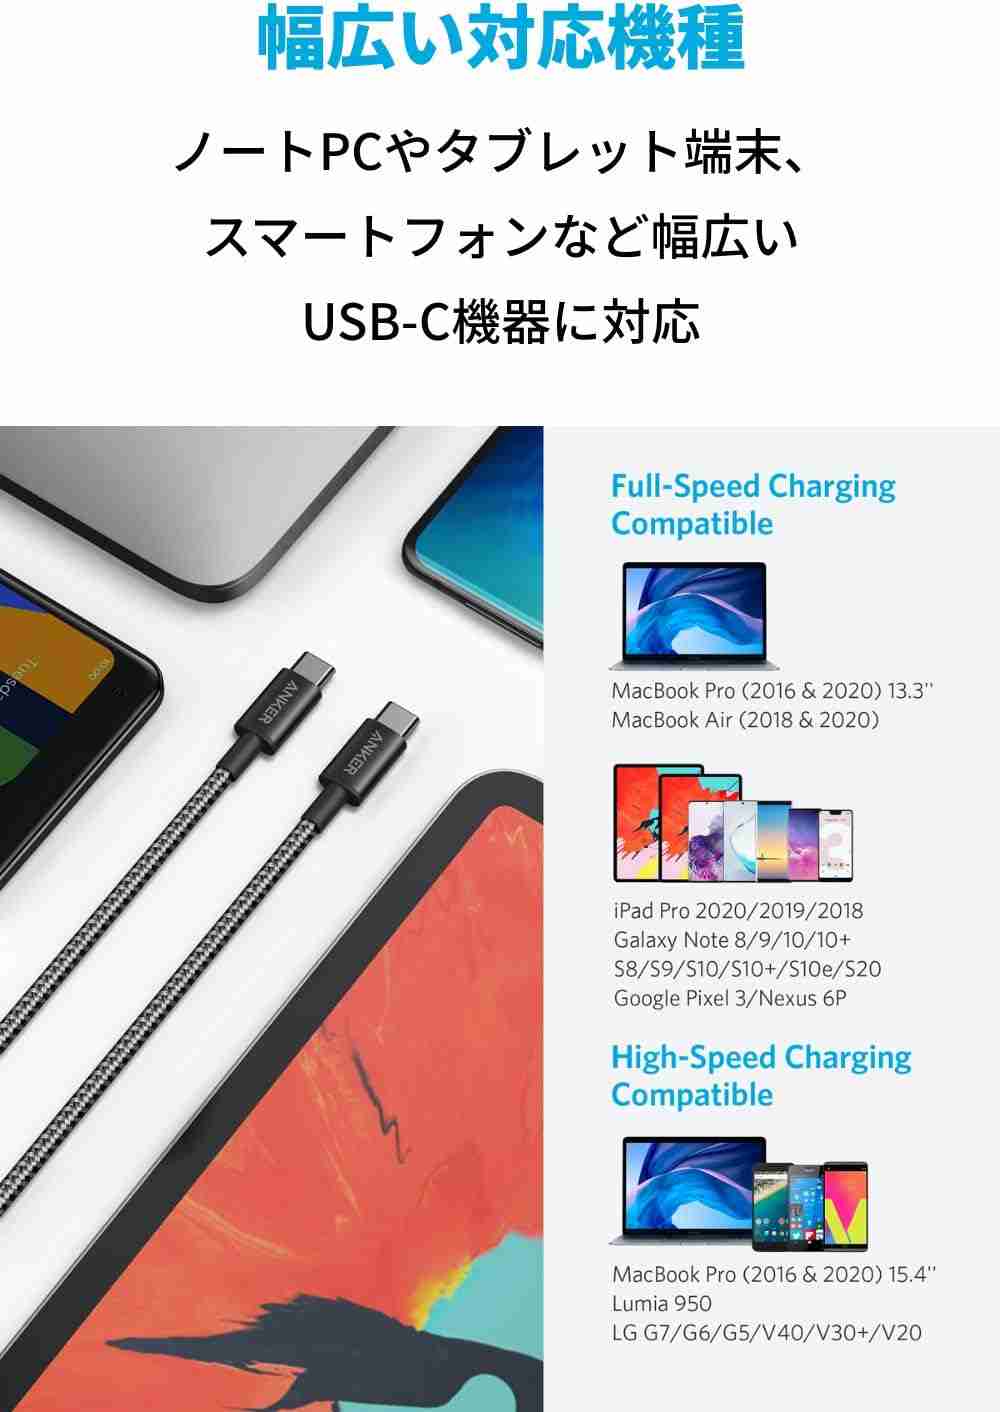 アンカー「Anker NewNylon USB-C to USB-C Cable 2.0 60W」は汎用性の高さが魅力